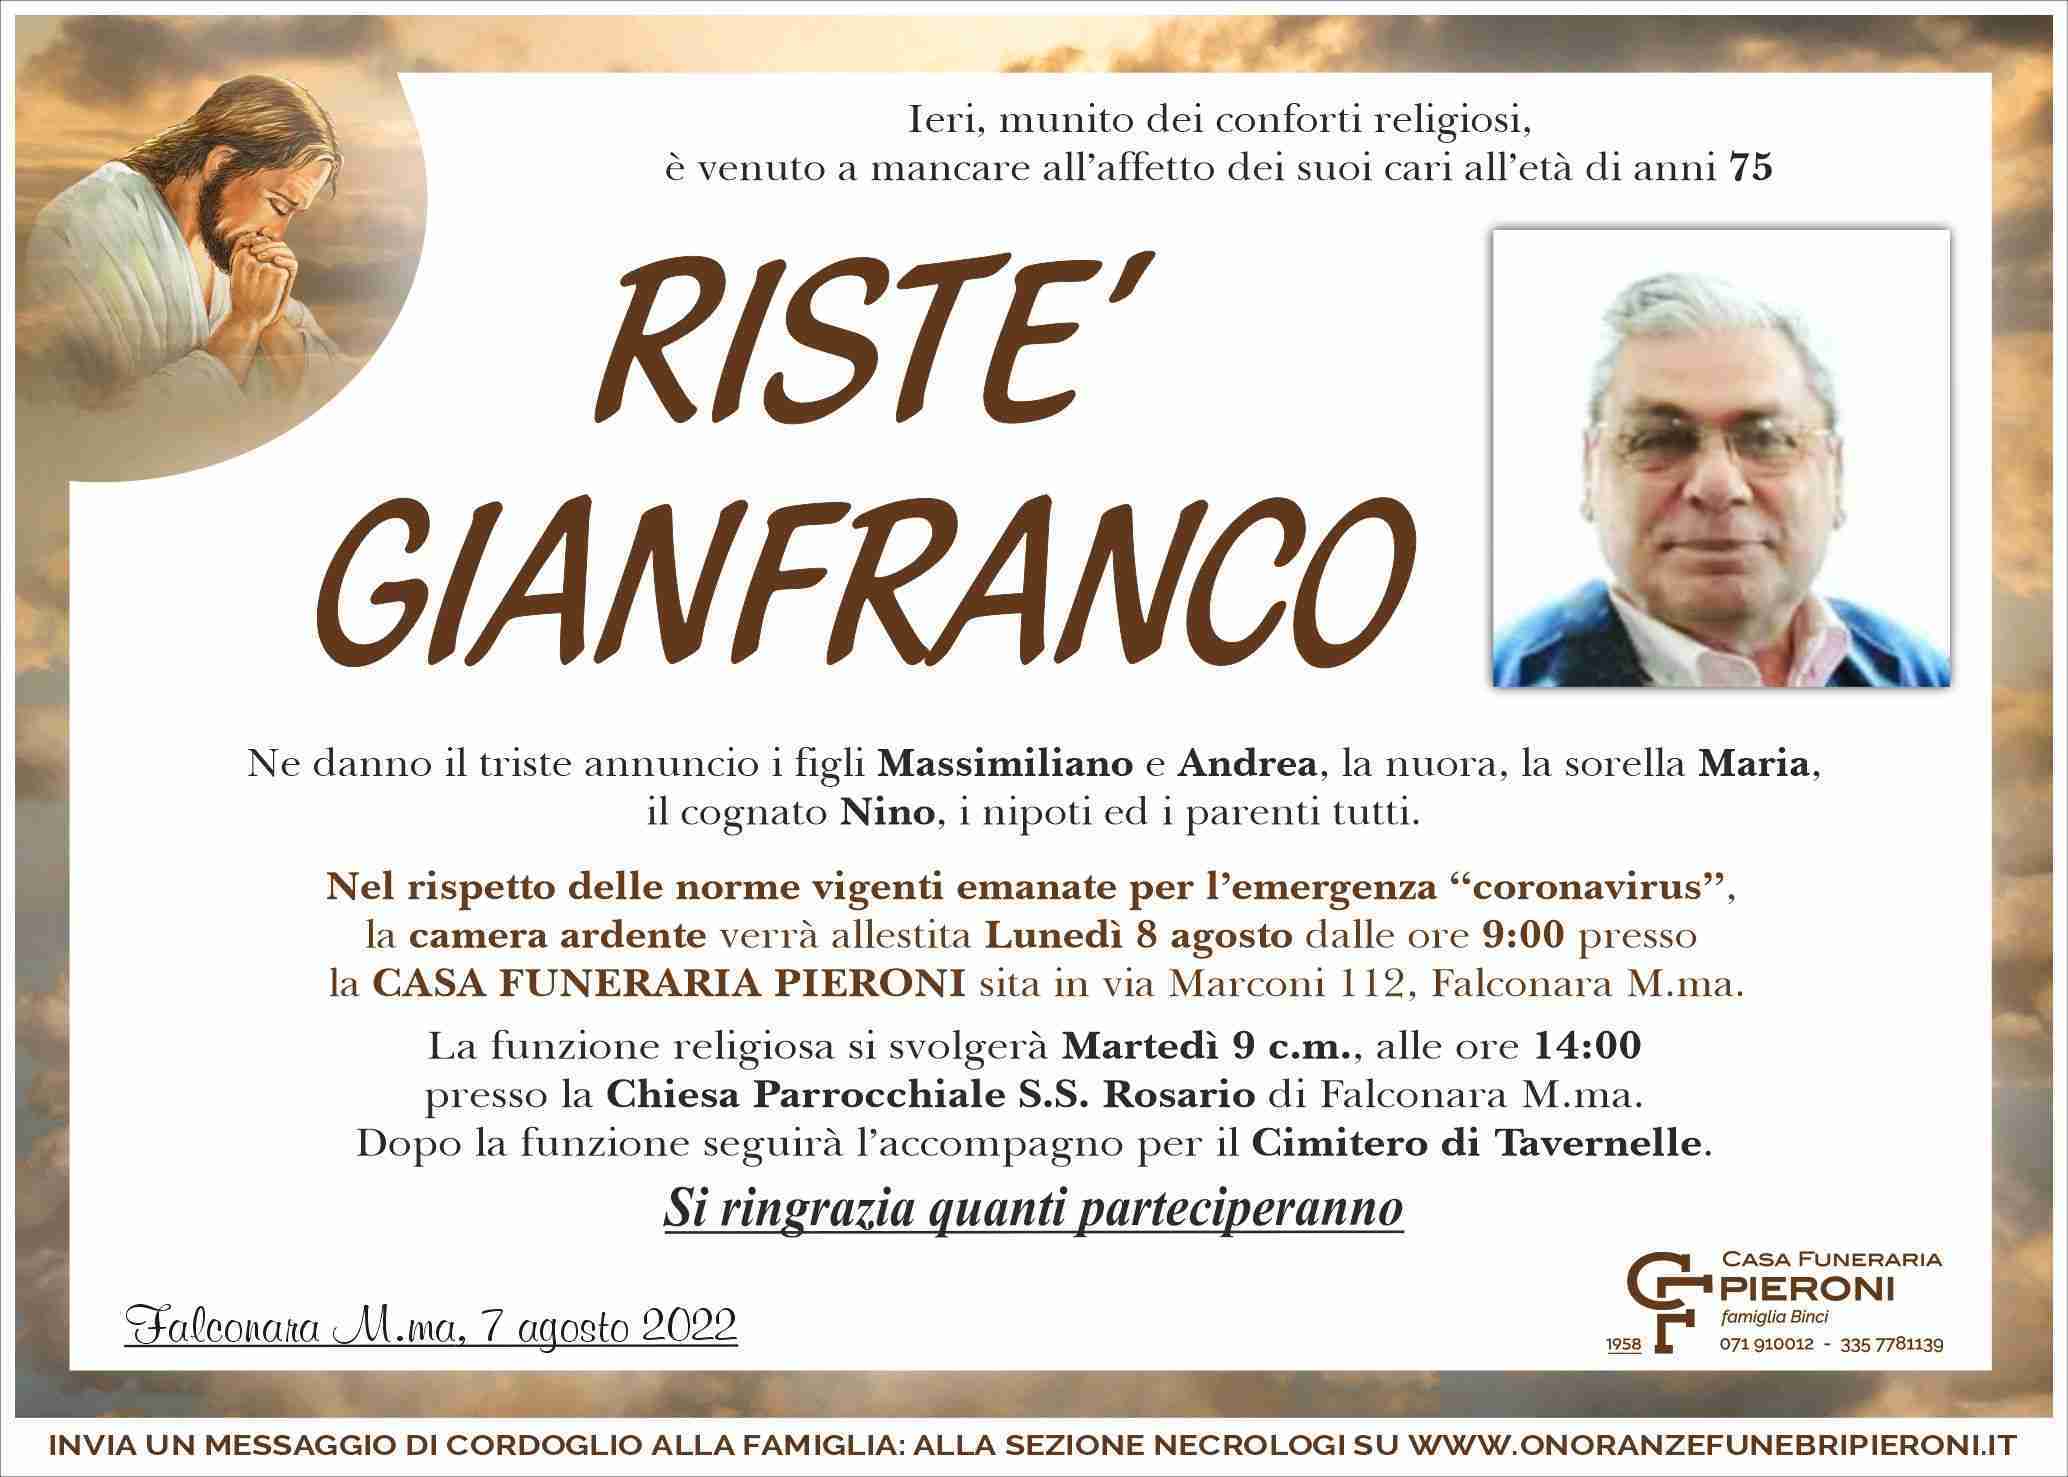 Gianfranco Ristè